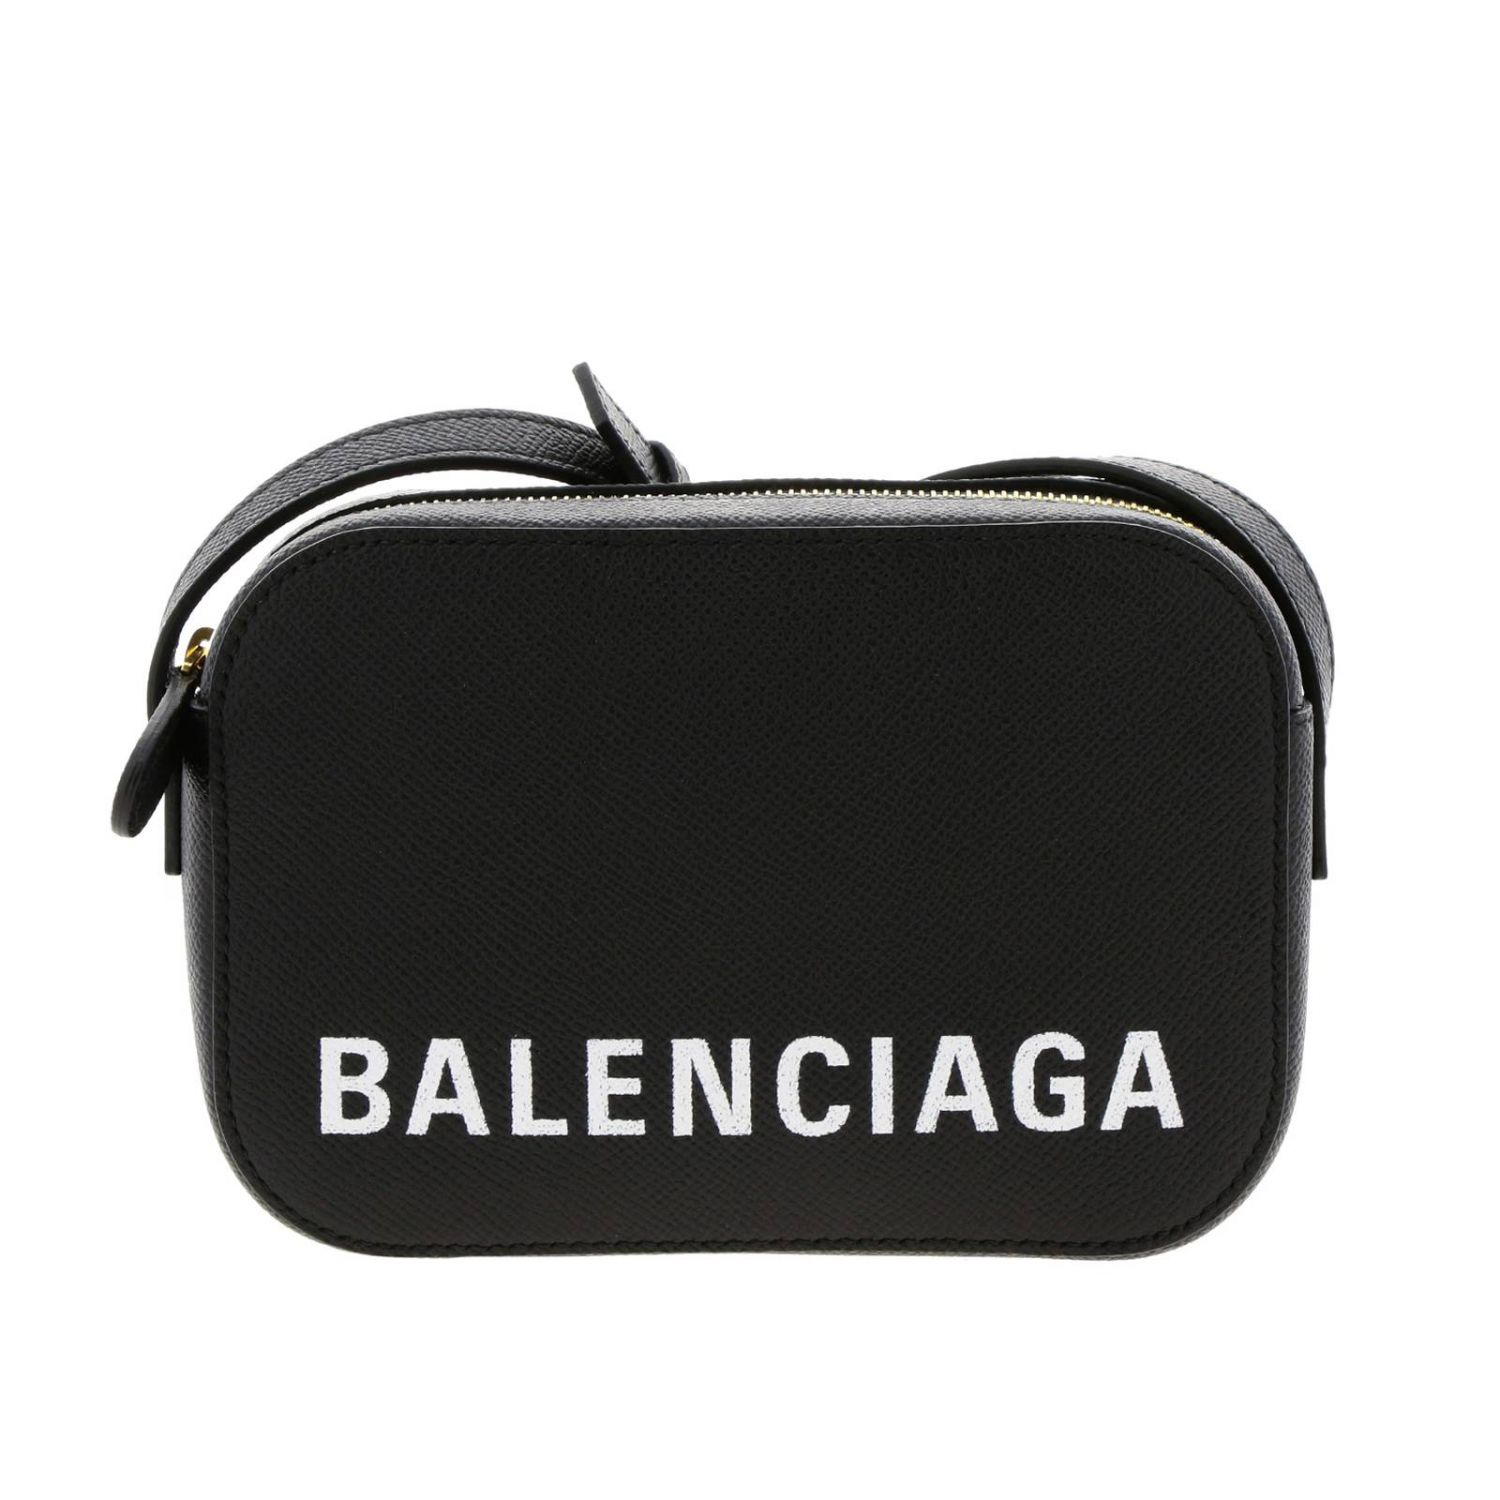 Balenciaga Outlet: mini bag for woman - Black | Balenciaga mini bag ...